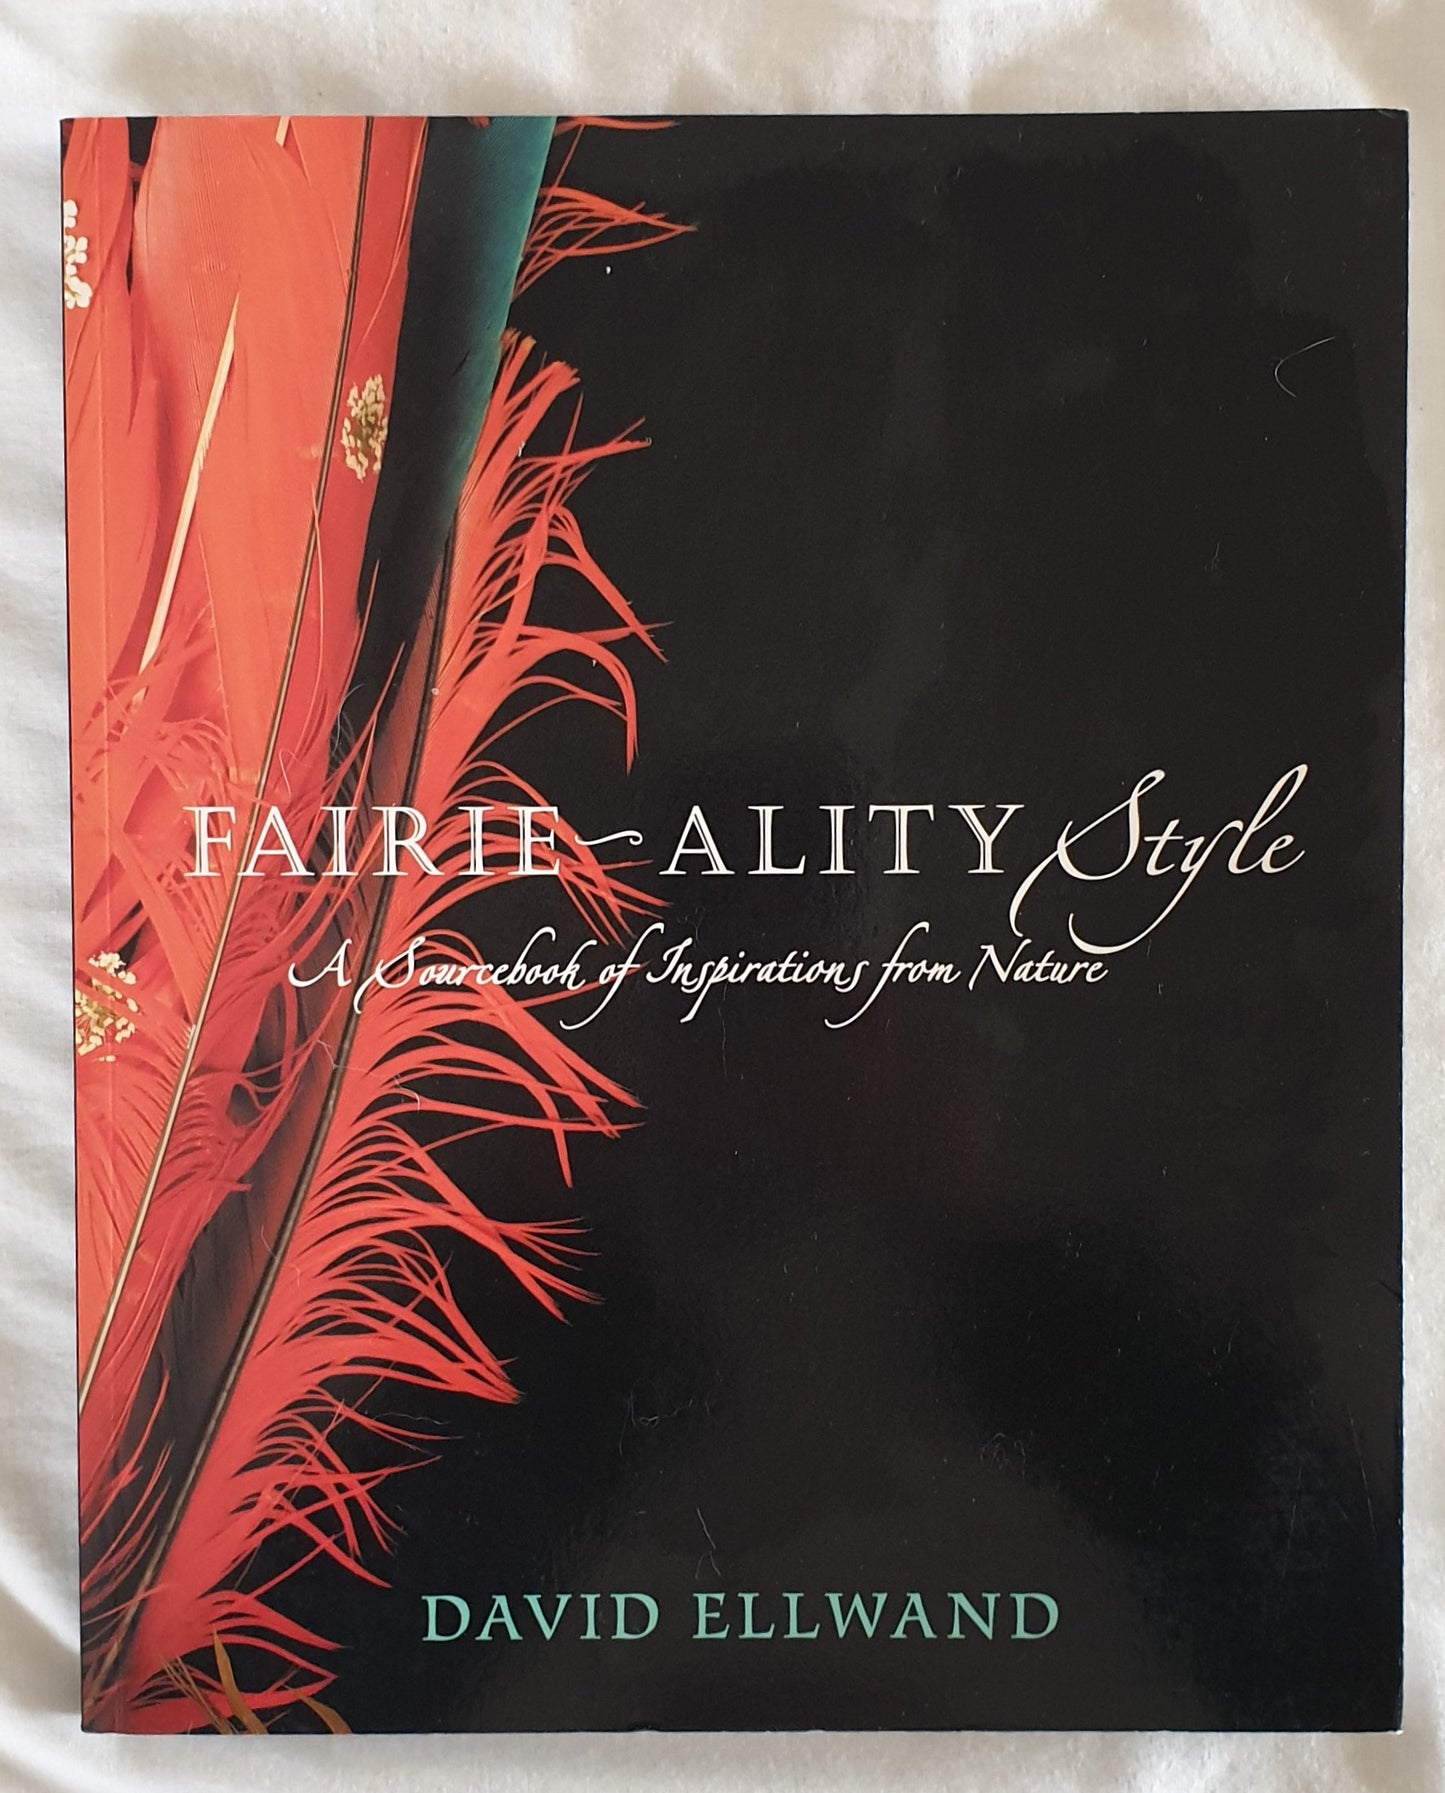 Fairie-ality Style by David Ellwand